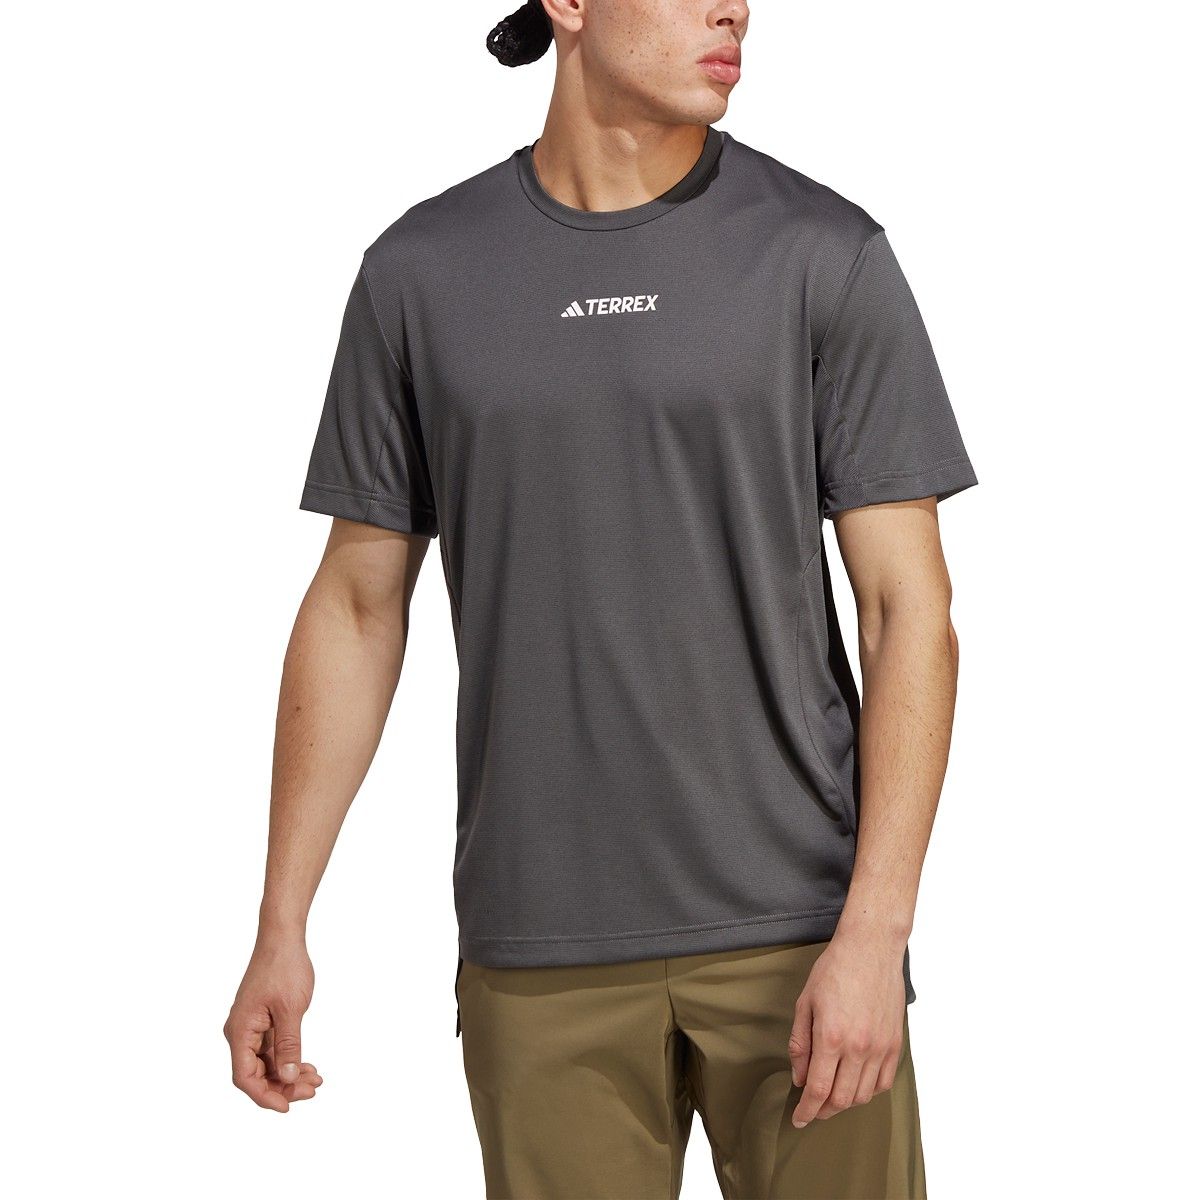 Qualität ist perfekt adidas Terrex Multi Mens Hiking HM4048 T-Shirt 